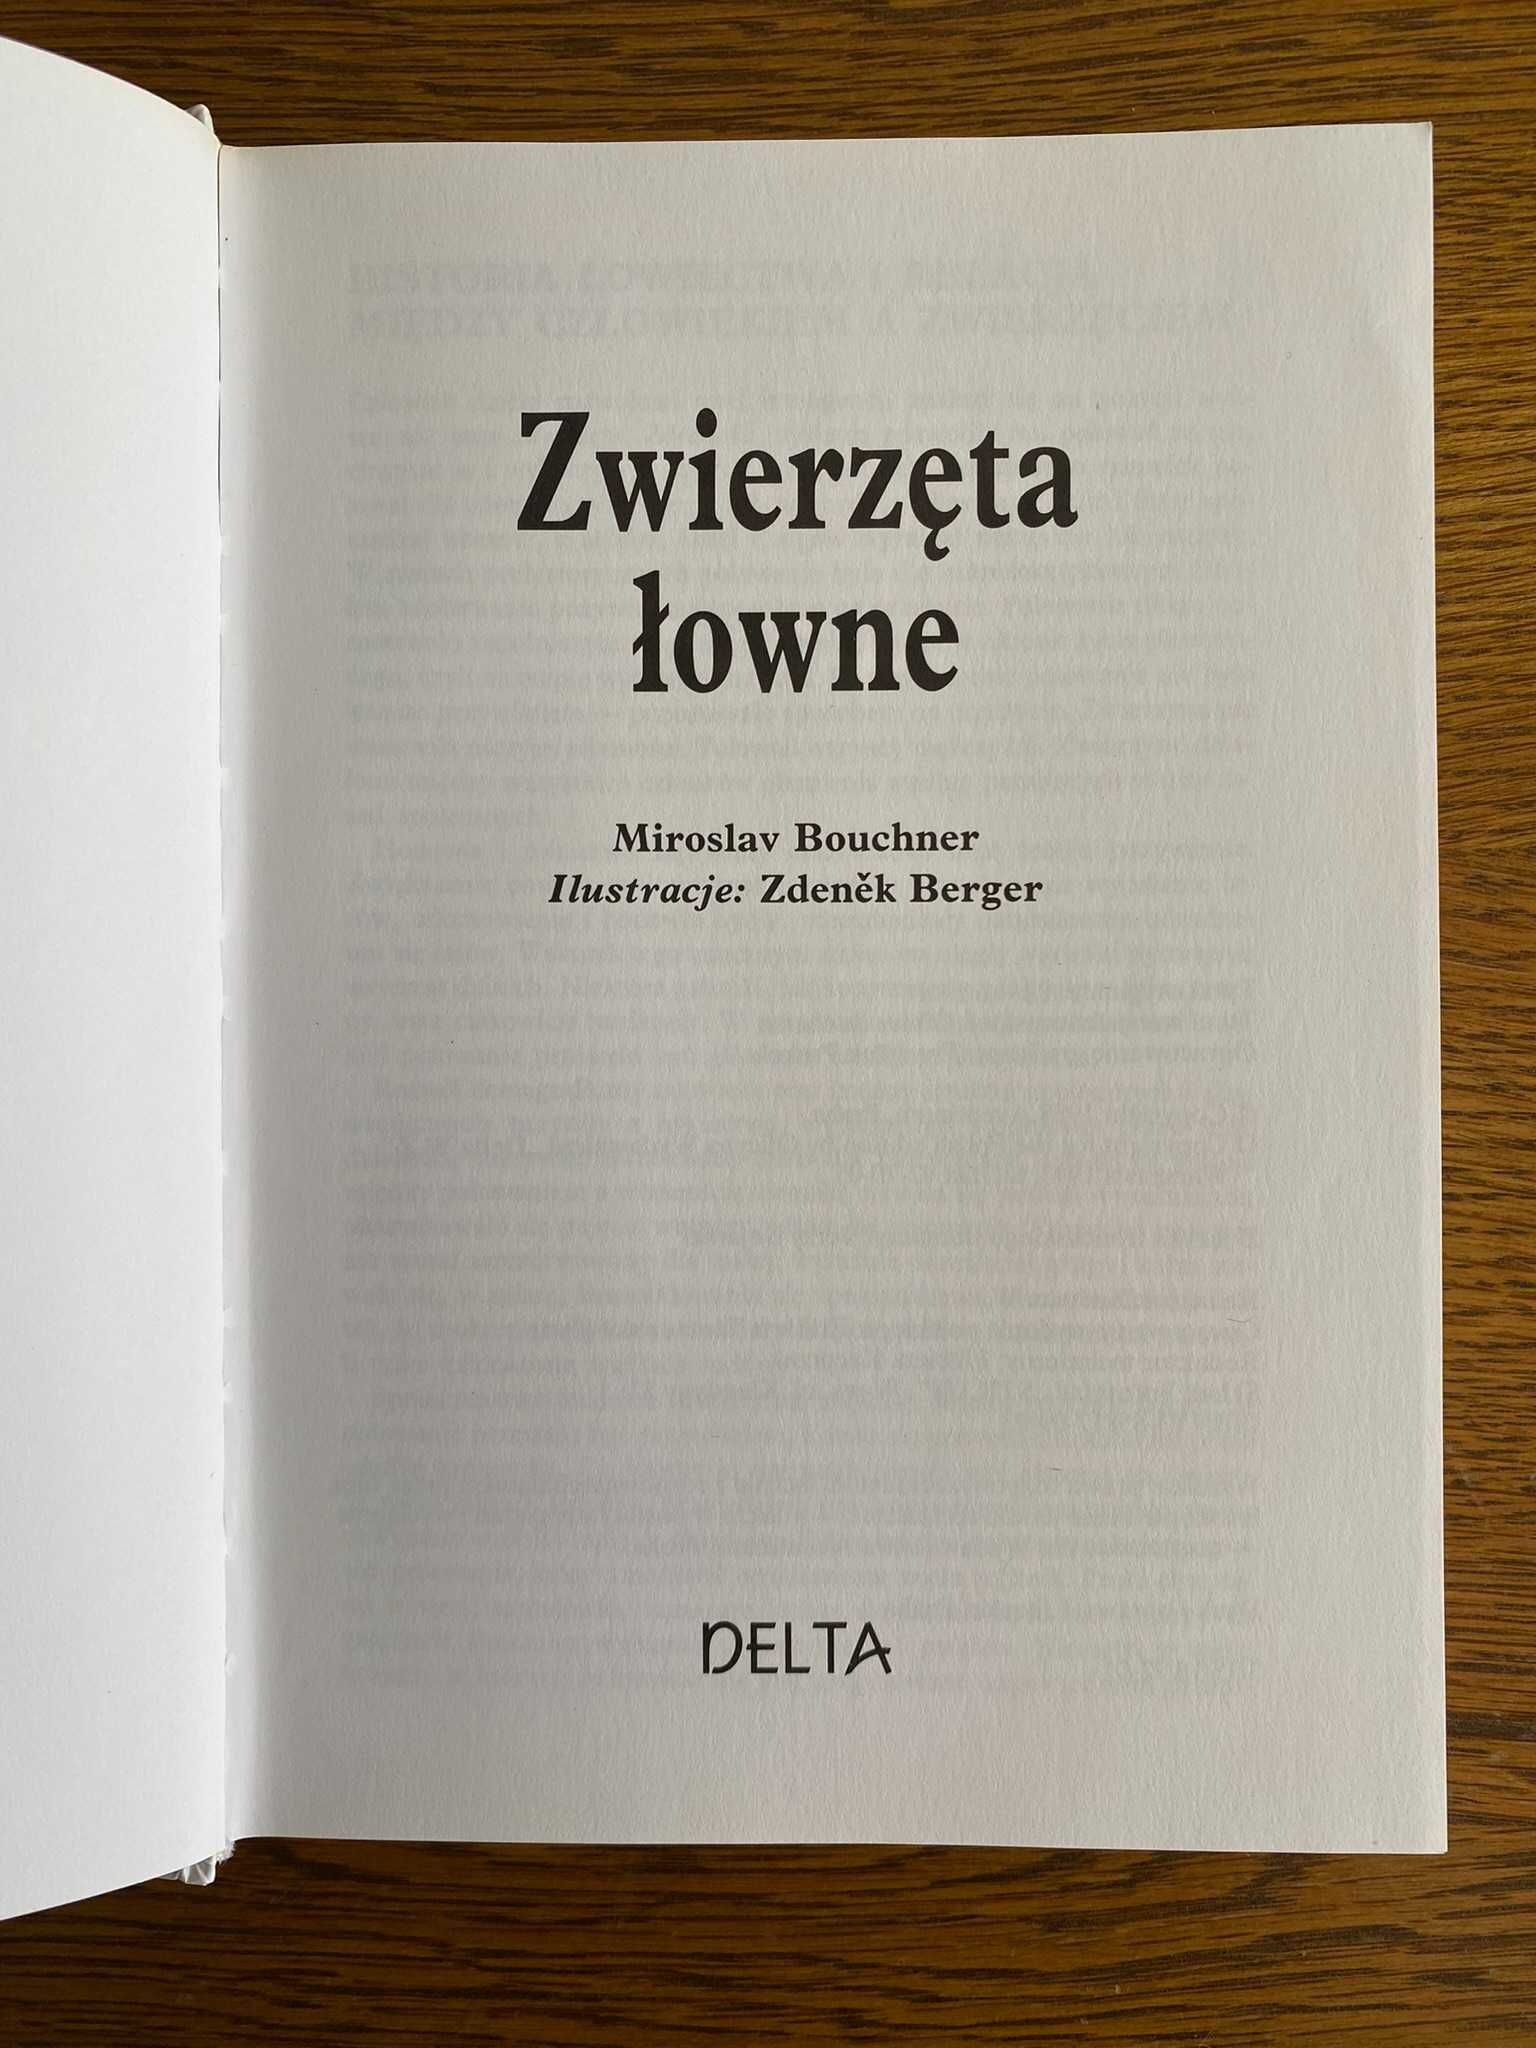 Zwierzęta łowne, Miroslav Bouchner (Warszawa 1993)